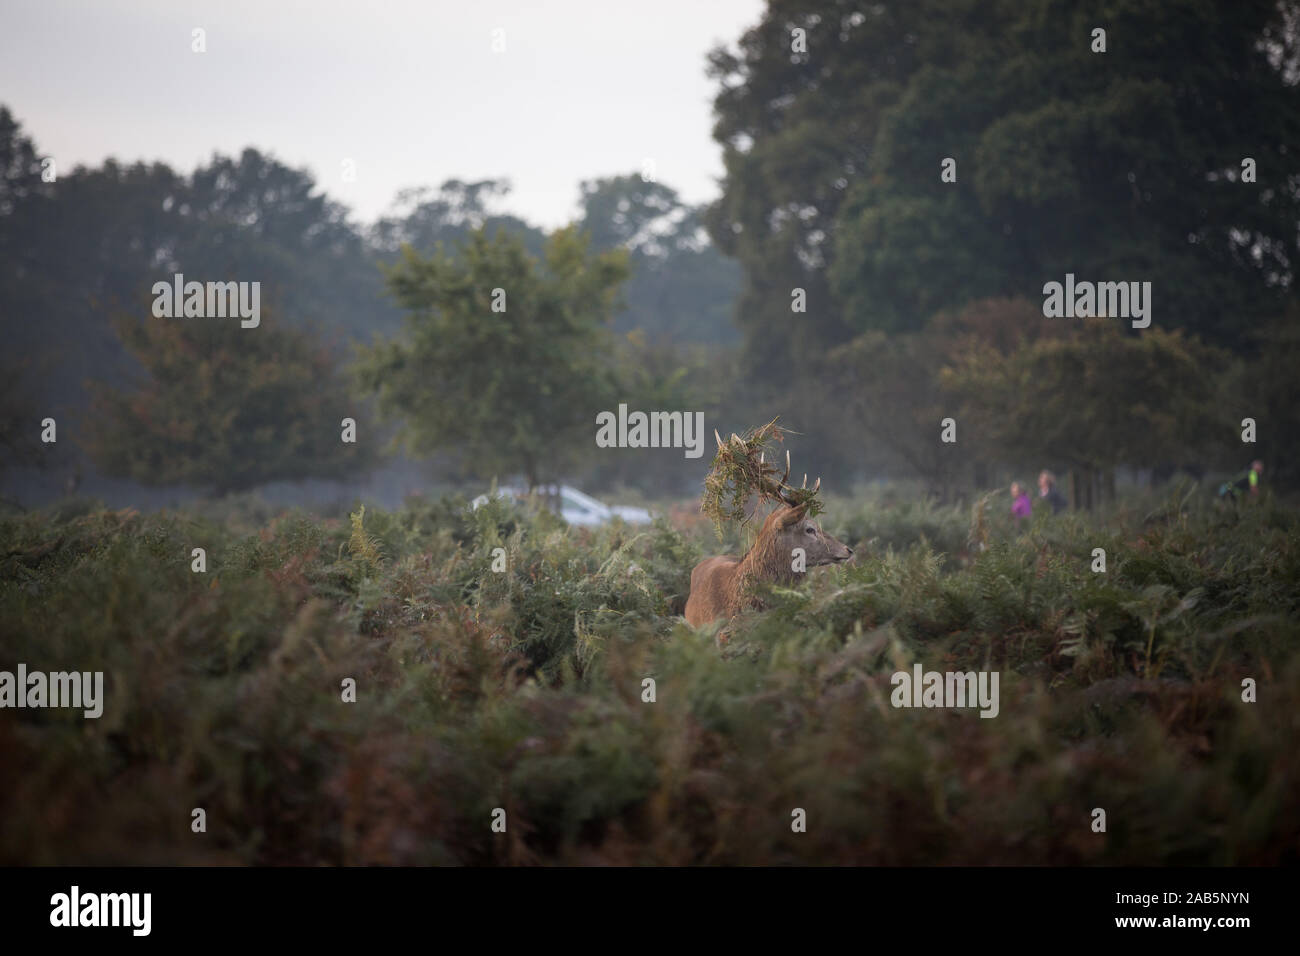 Dans l'enterrement de fougères au cours de l'automne Deer Rut à Richmond Park, Angleterre Banque D'Images